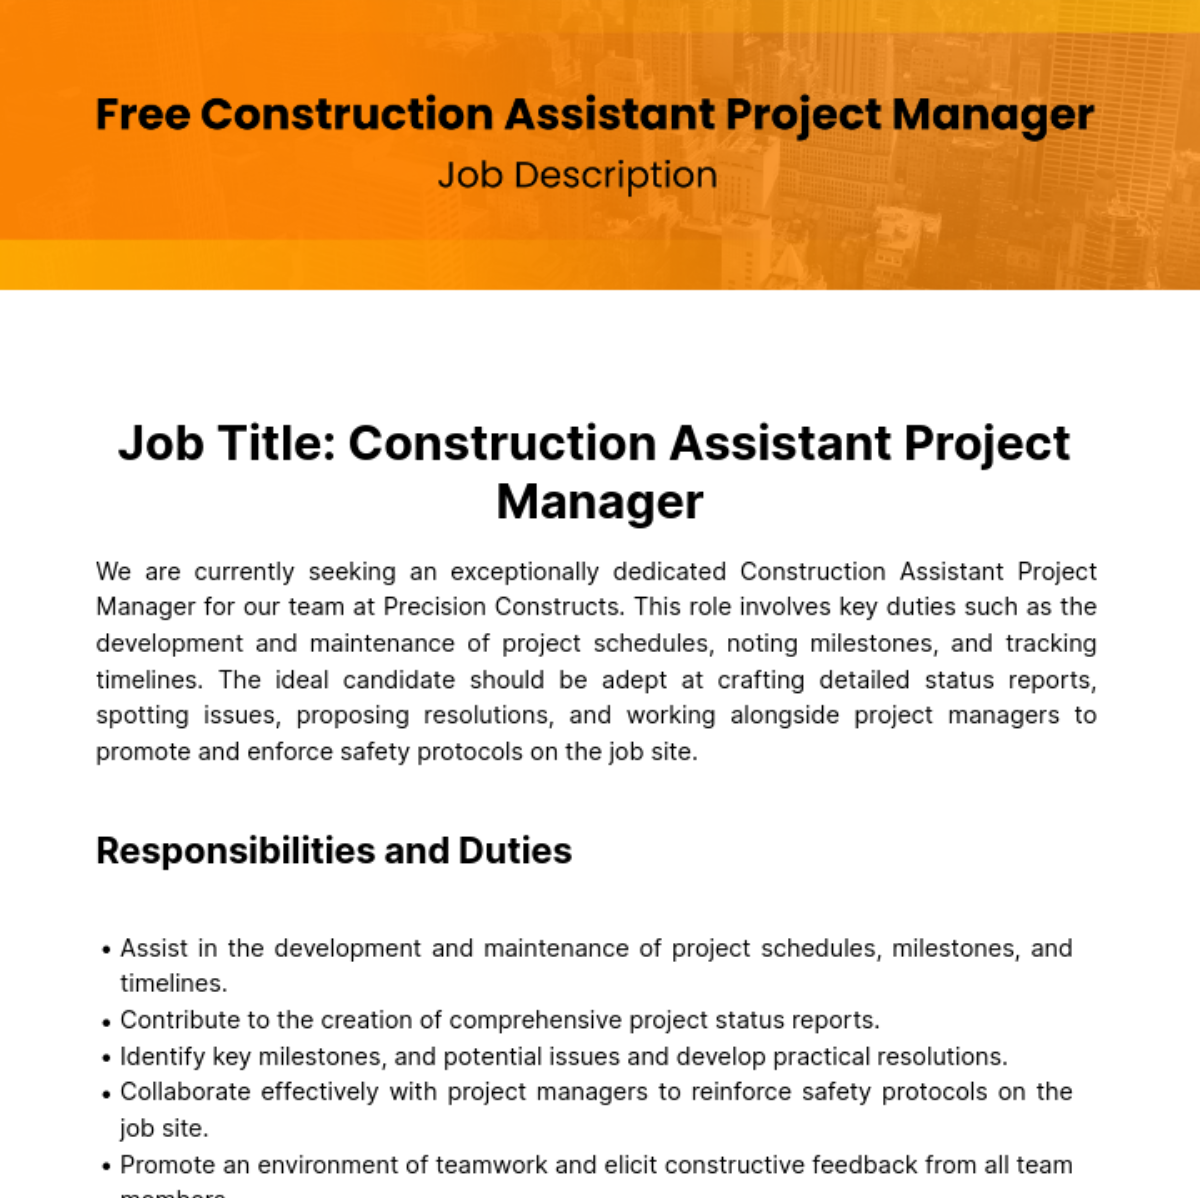 Construction Assistant Project Manager Job Description Template